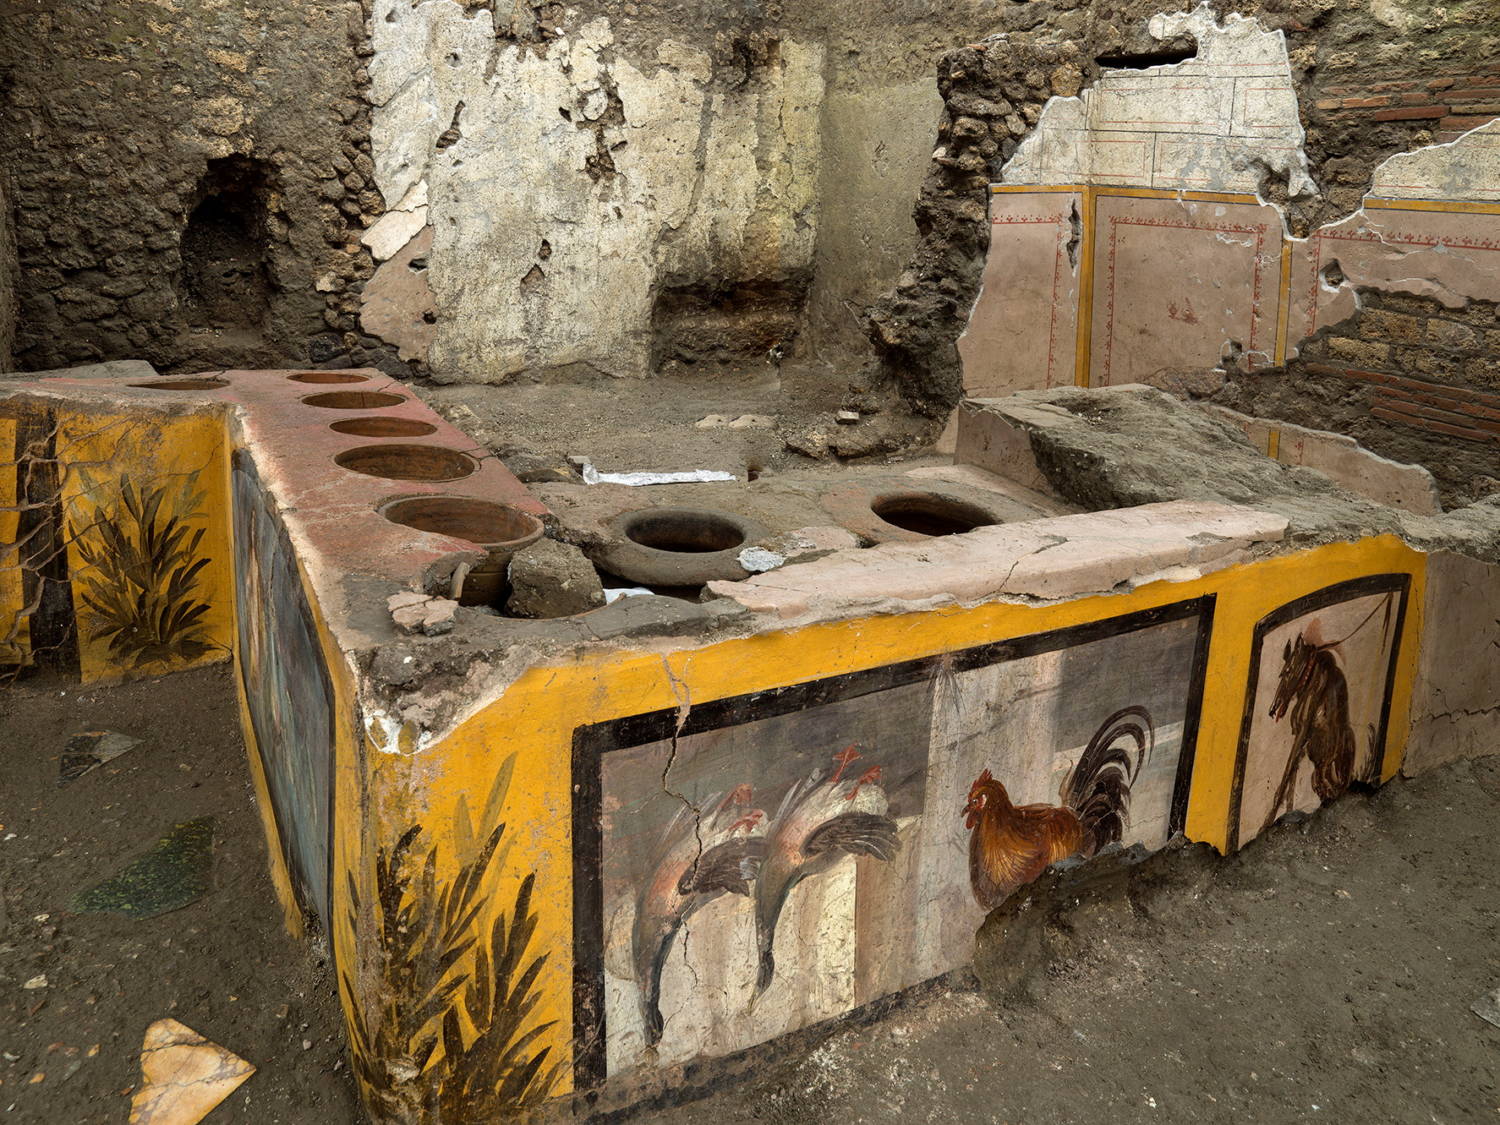 Οι αρχαιολόγοι αποκαλύπτουν αρχαίο κατάστημα τροφίμων στο δρόμο στην Πομπηία